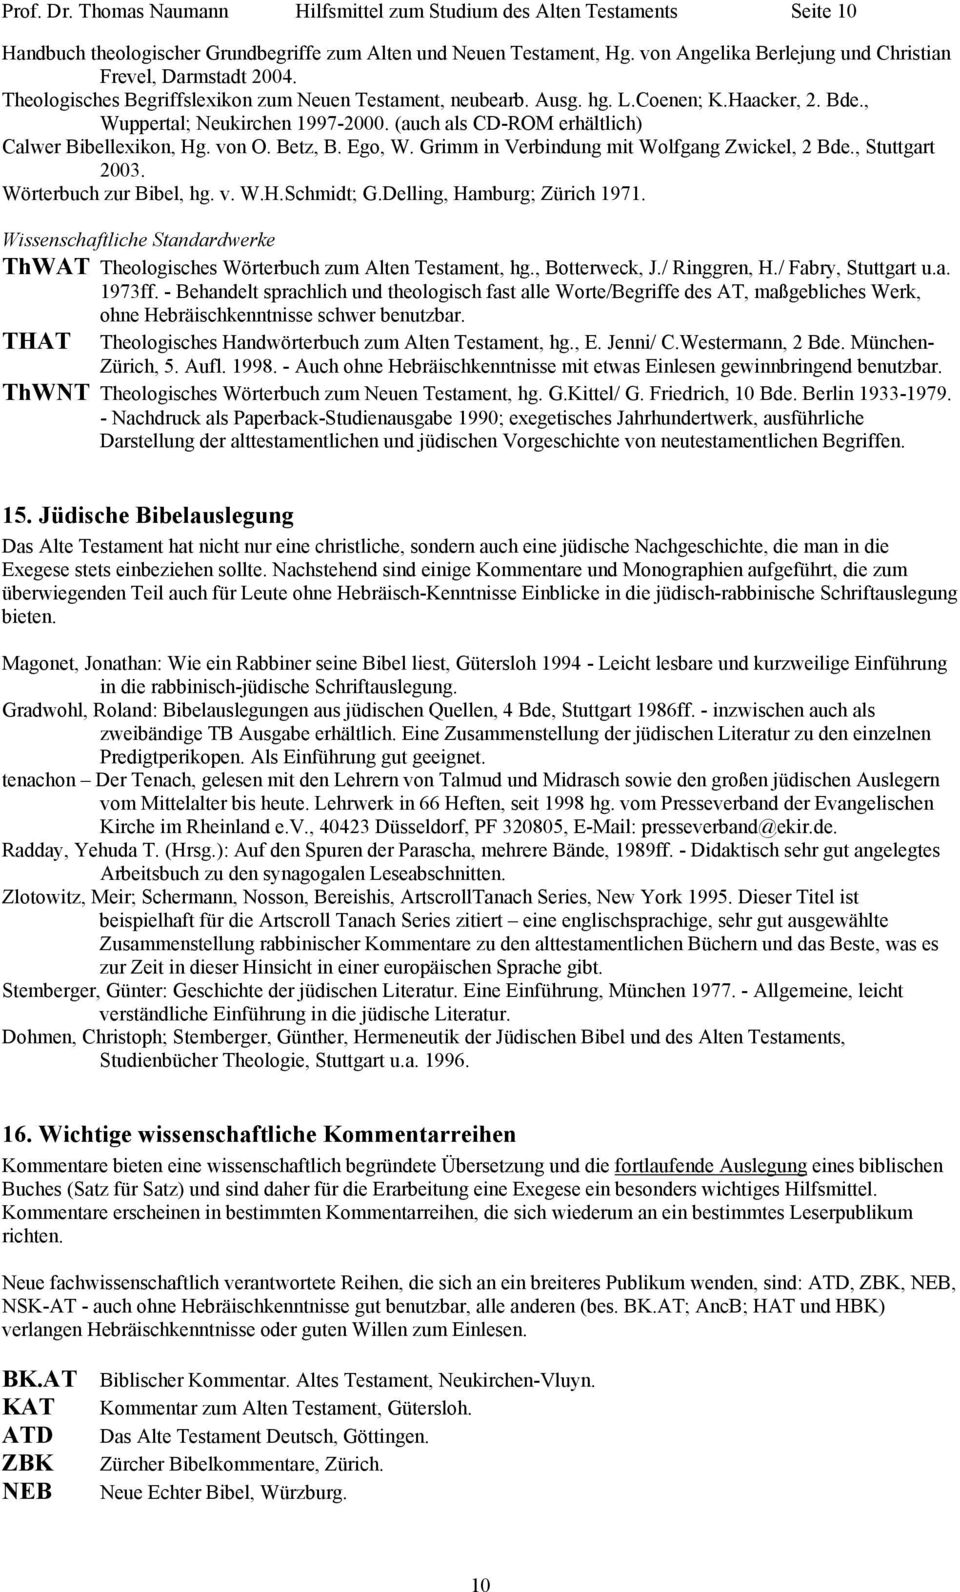 (auch als CD-ROM erhältlich) Calwer Bibellexikon, Hg. von O. Betz, B. Ego, W. Grimm in Verbindung mit Wolfgang Zwickel, 2 Bde., Stuttgart 2003. Wörterbuch zur Bibel, hg. v. W.H.Schmidt; G.